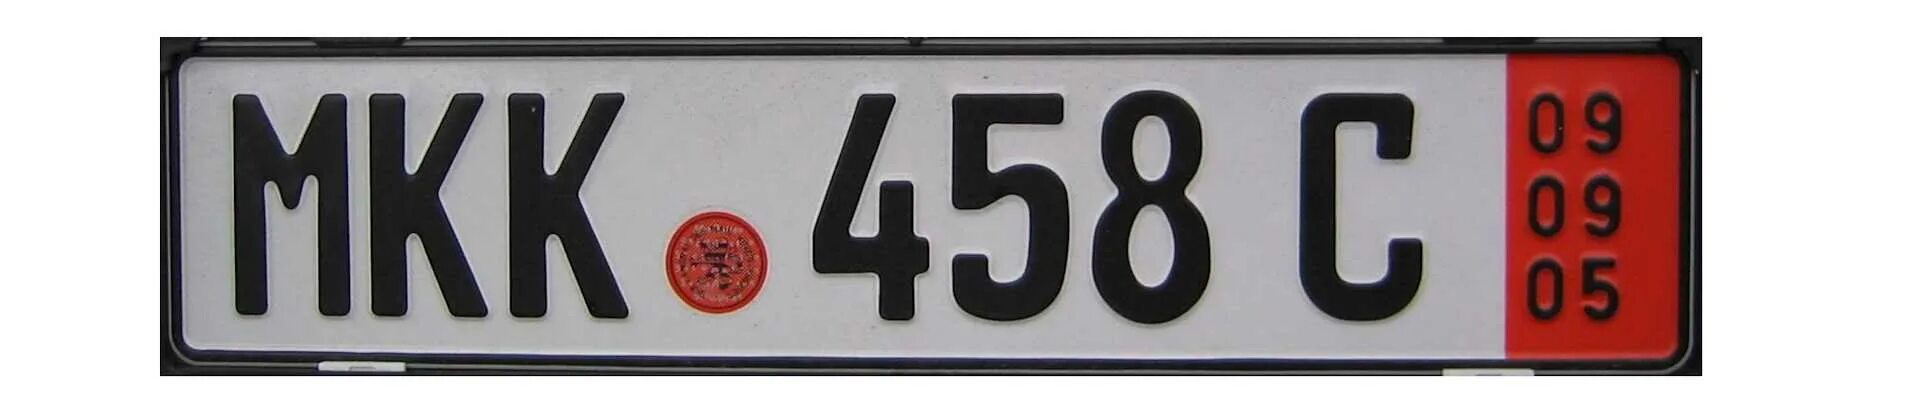 Номер тл. Транзитные гос номера Германии. Транзитные номерные знаки Германии. Немецкие номера машин транзитные. Транзитные номера Герм.